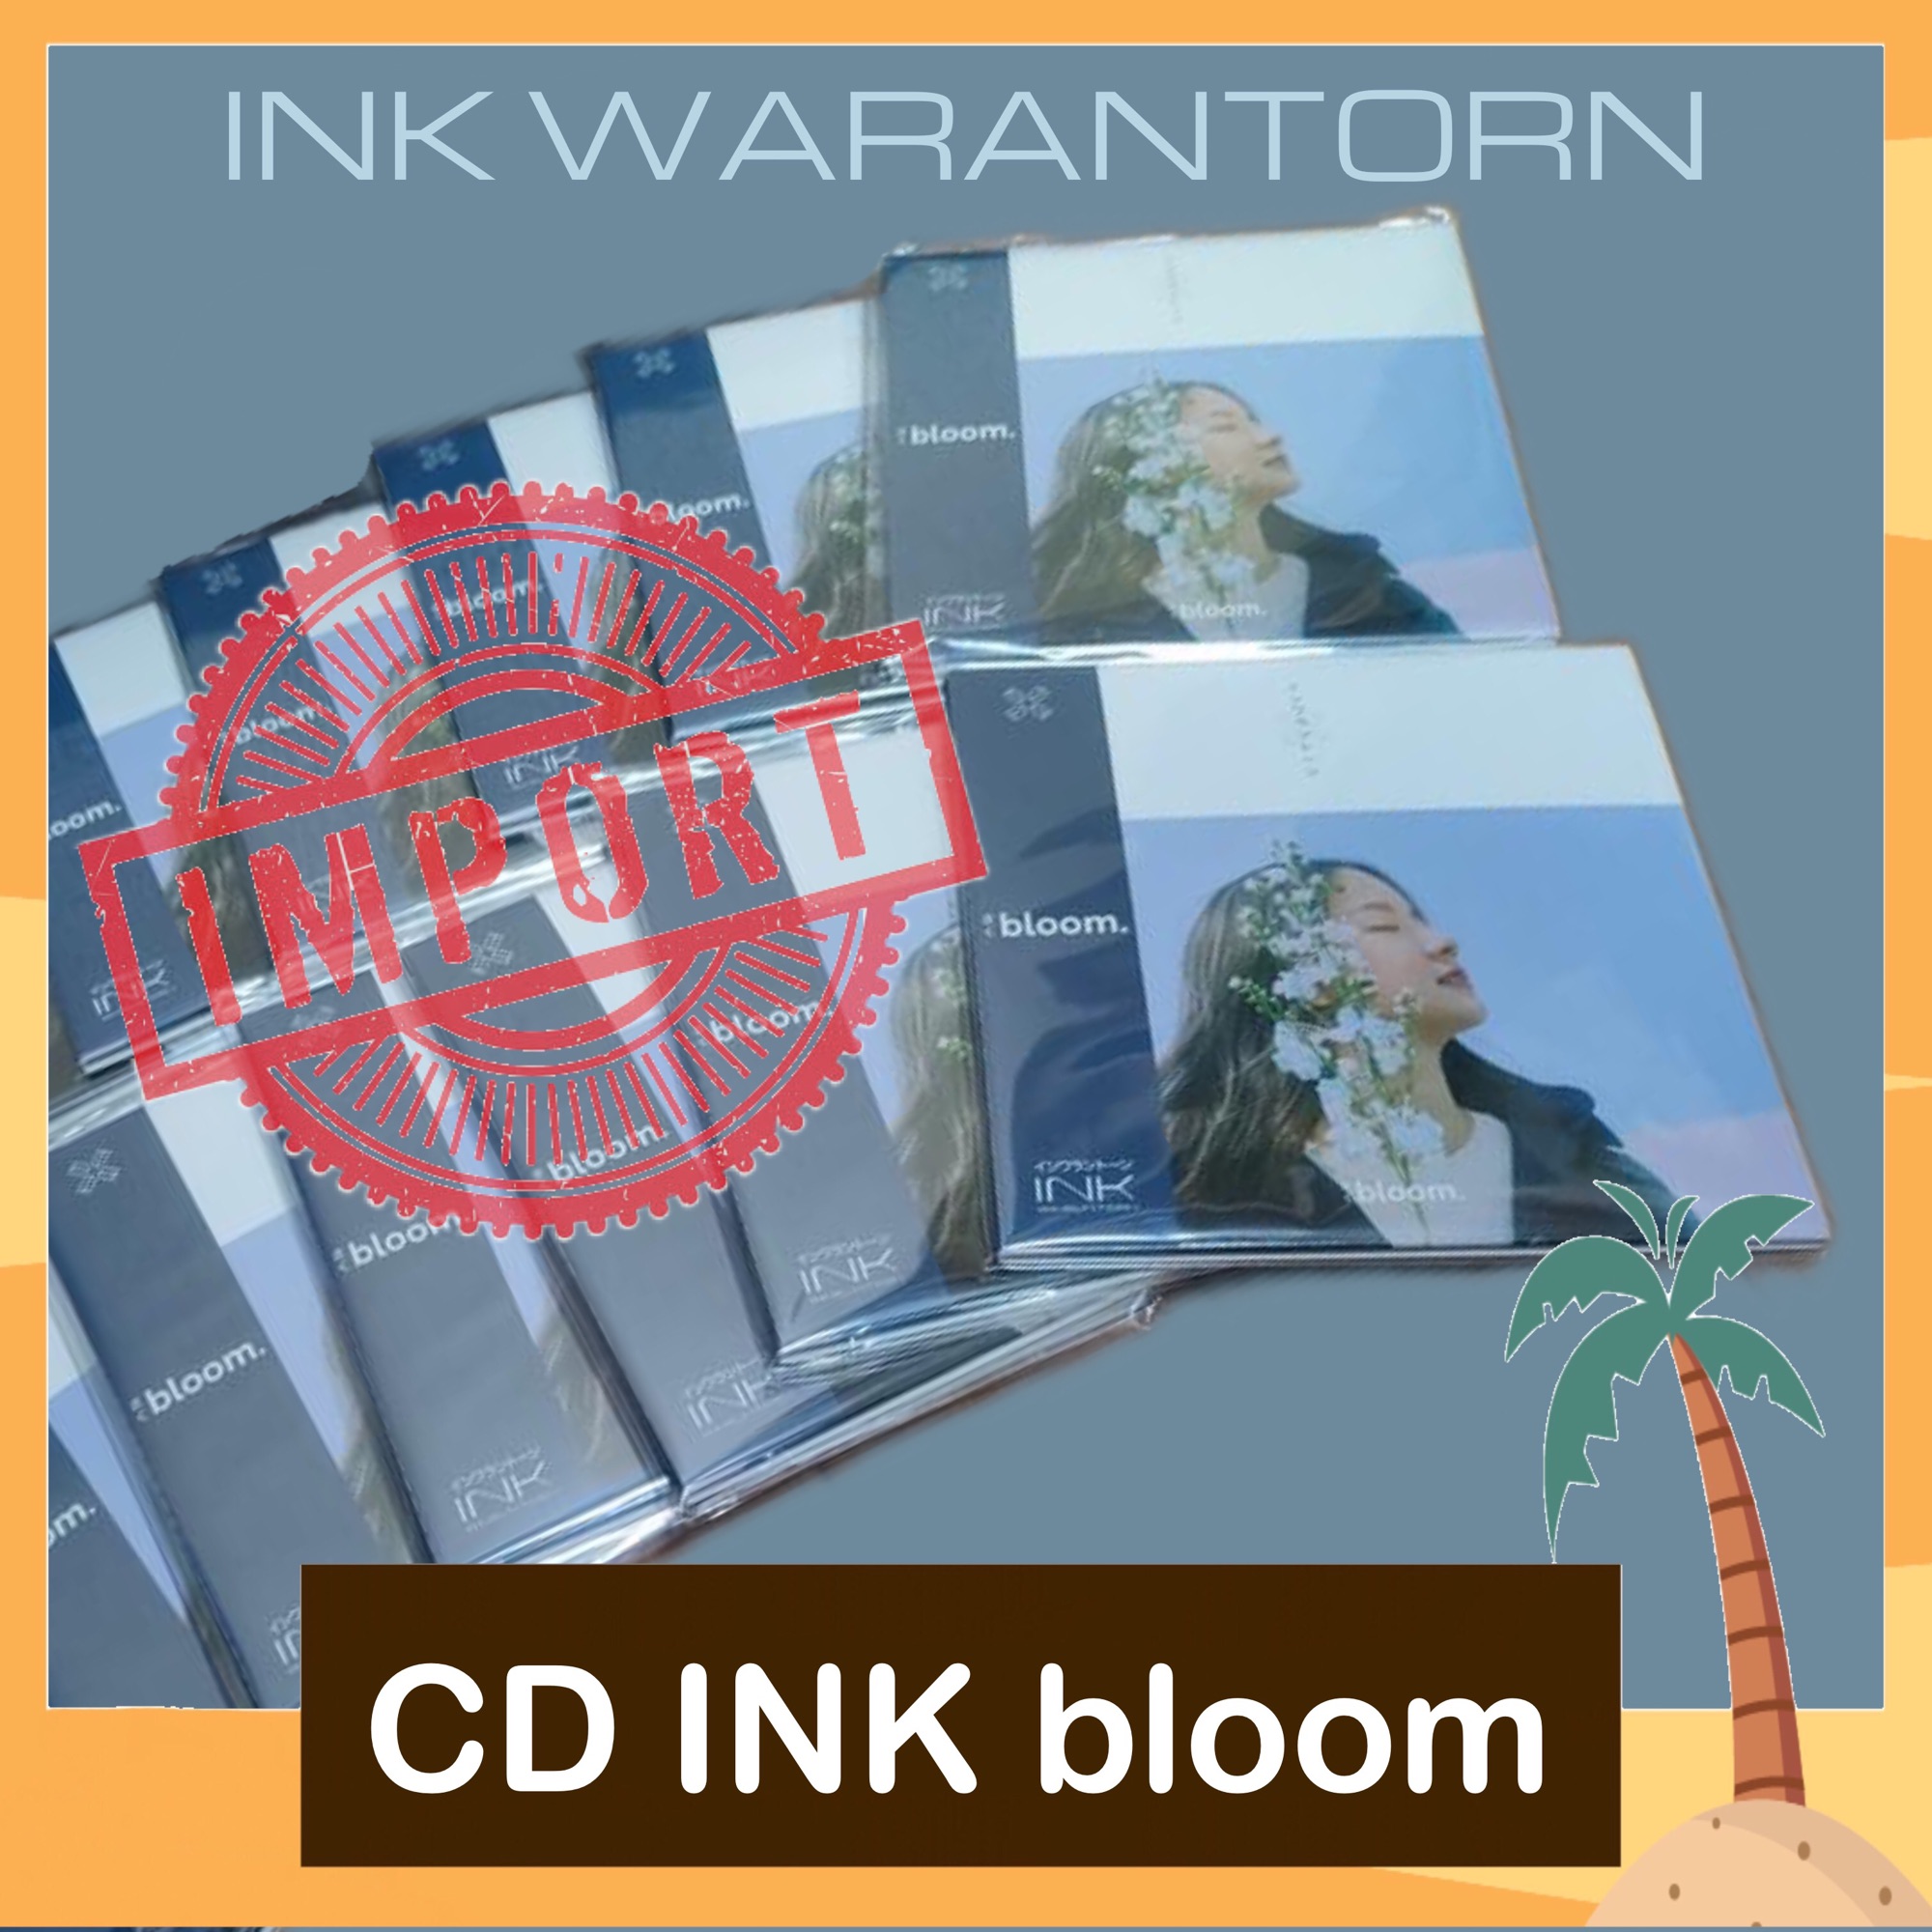 Ink Waruntorn Bloom THREE1989 アナログレコード | ethicsinsports.ch